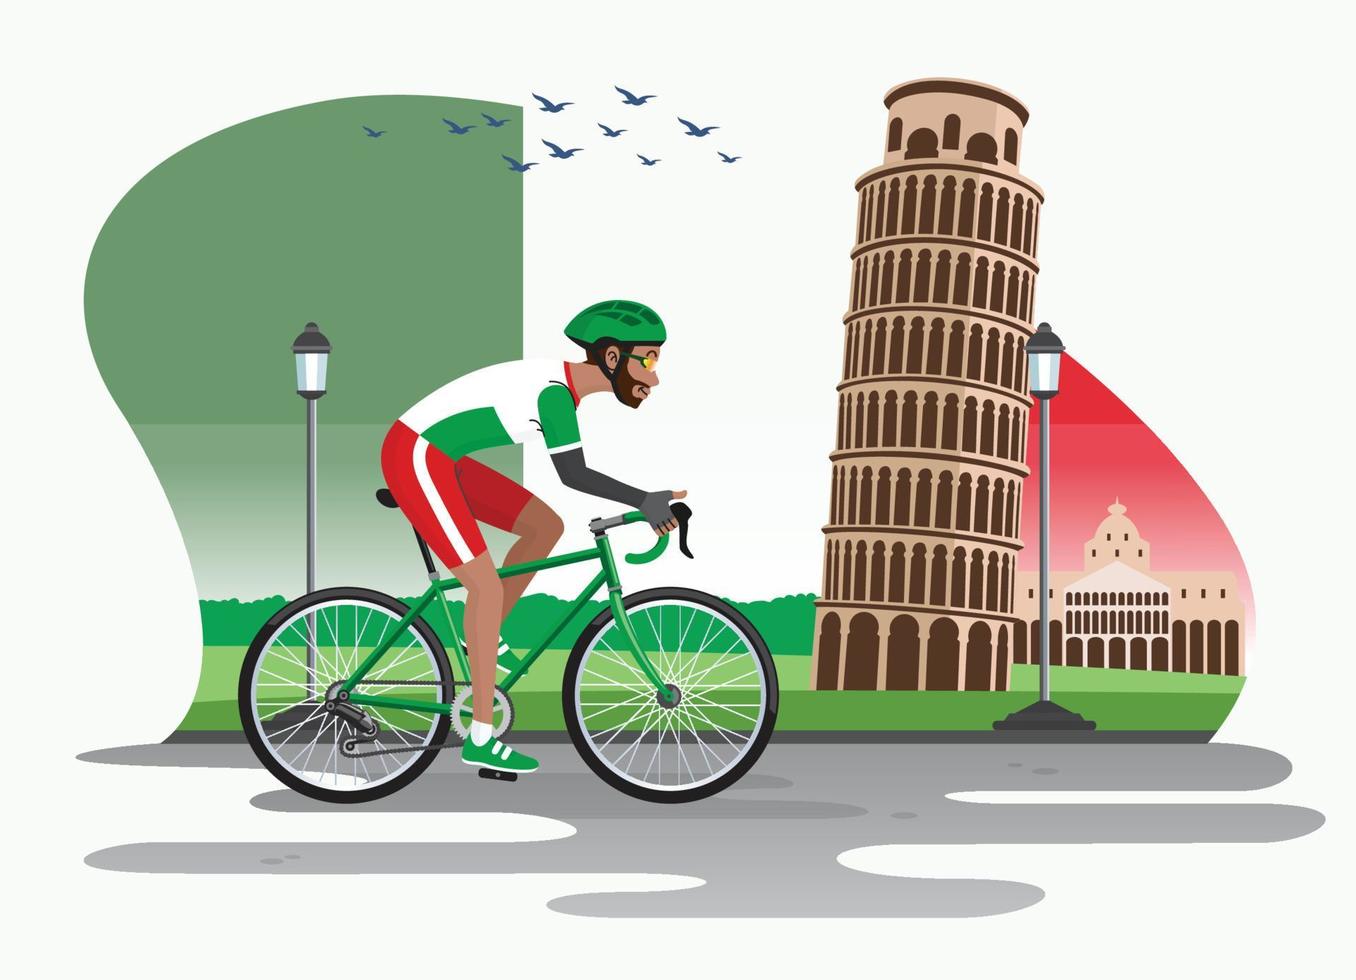 Mann Radfahren im Italien mit pisa Turm wie Hintergrund vektor